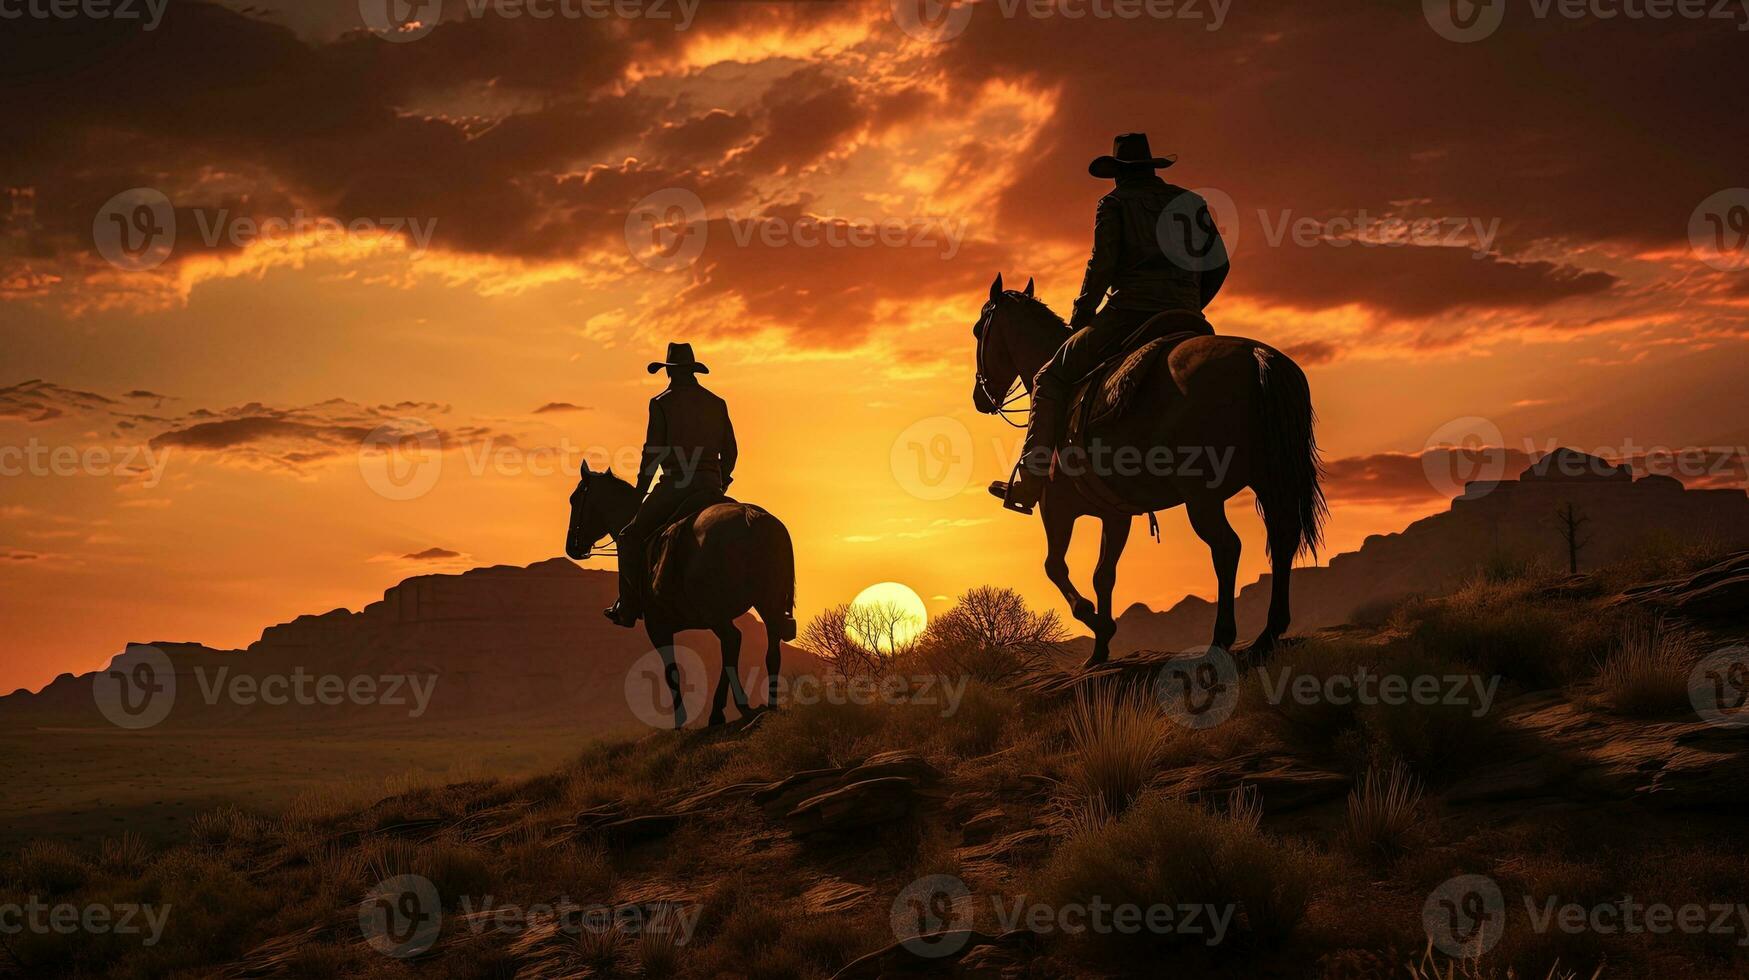 cow-boy idée illustré avec silhouettes de cow-boys à le coucher du soleil sur une colline avec les chevaux concentré composition photo